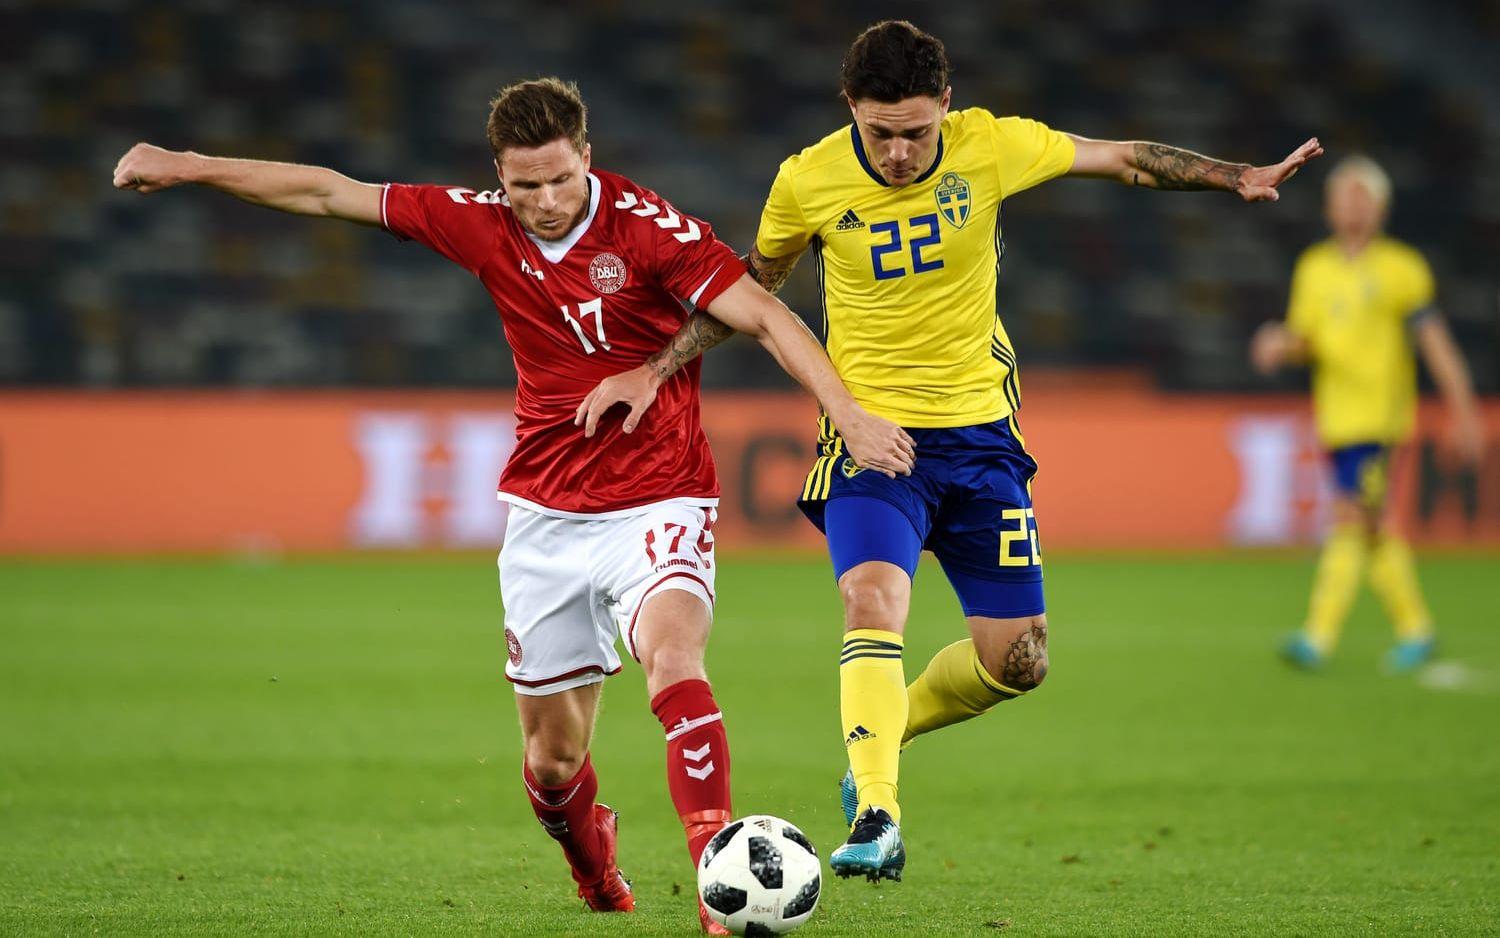 Sverige tog en sen seger mot Danmark med 1-0 efter att Gustaf Nilsson gjort matchens enda mål. 